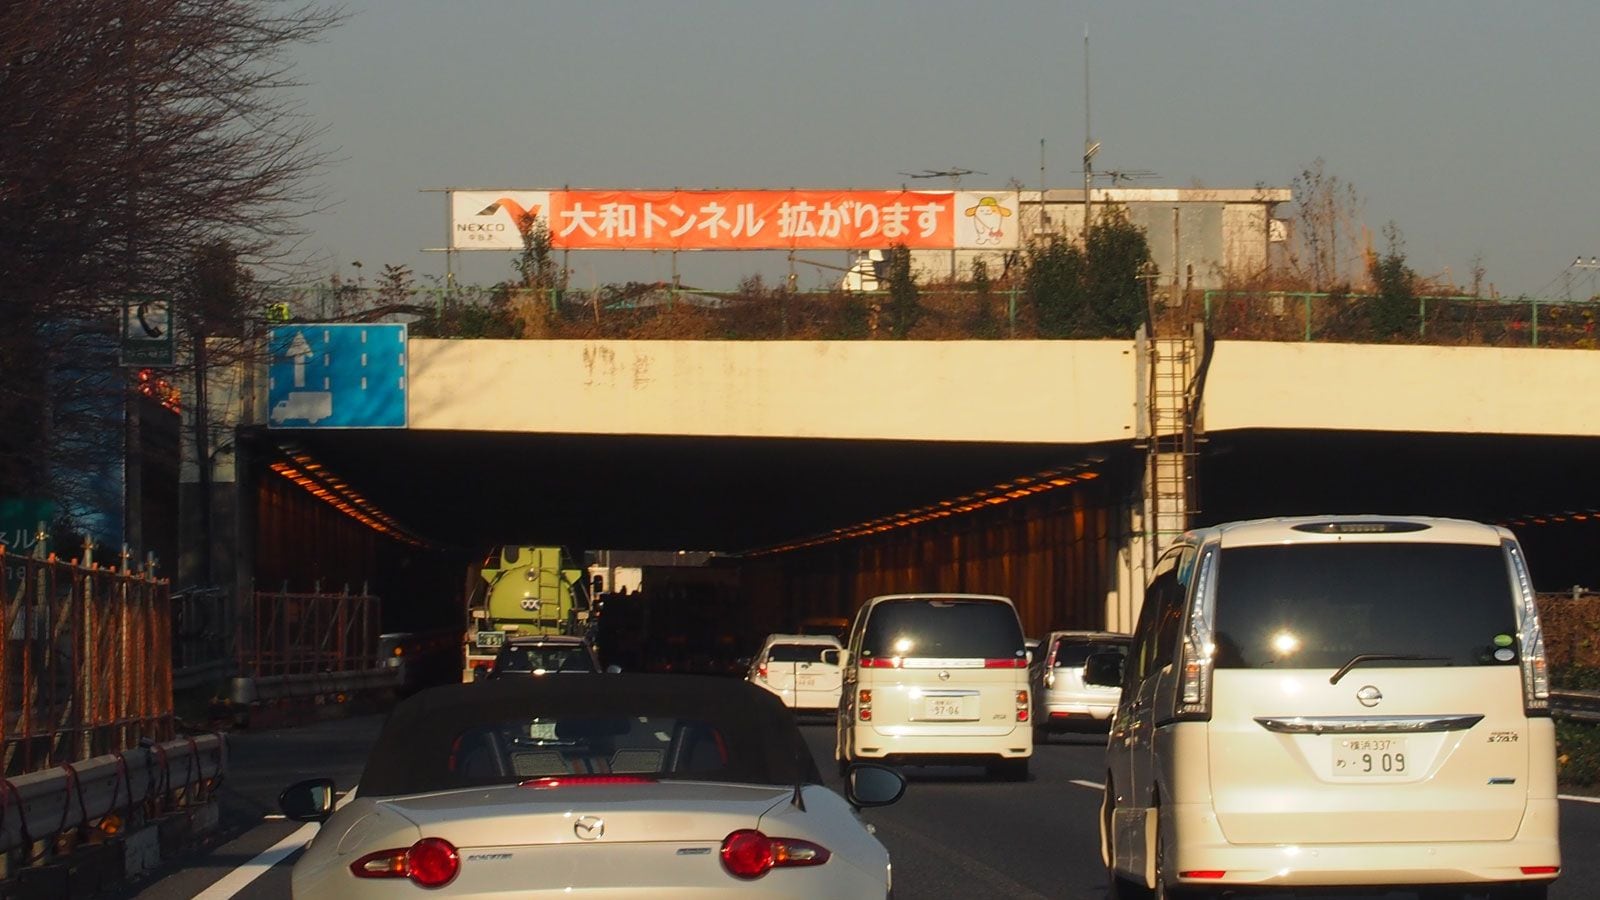 東名 大和トンネル がいつも渋滞する理由 佐滝剛弘の高速道路最前線 東洋経済オンライン 社会をよくする経済ニュース